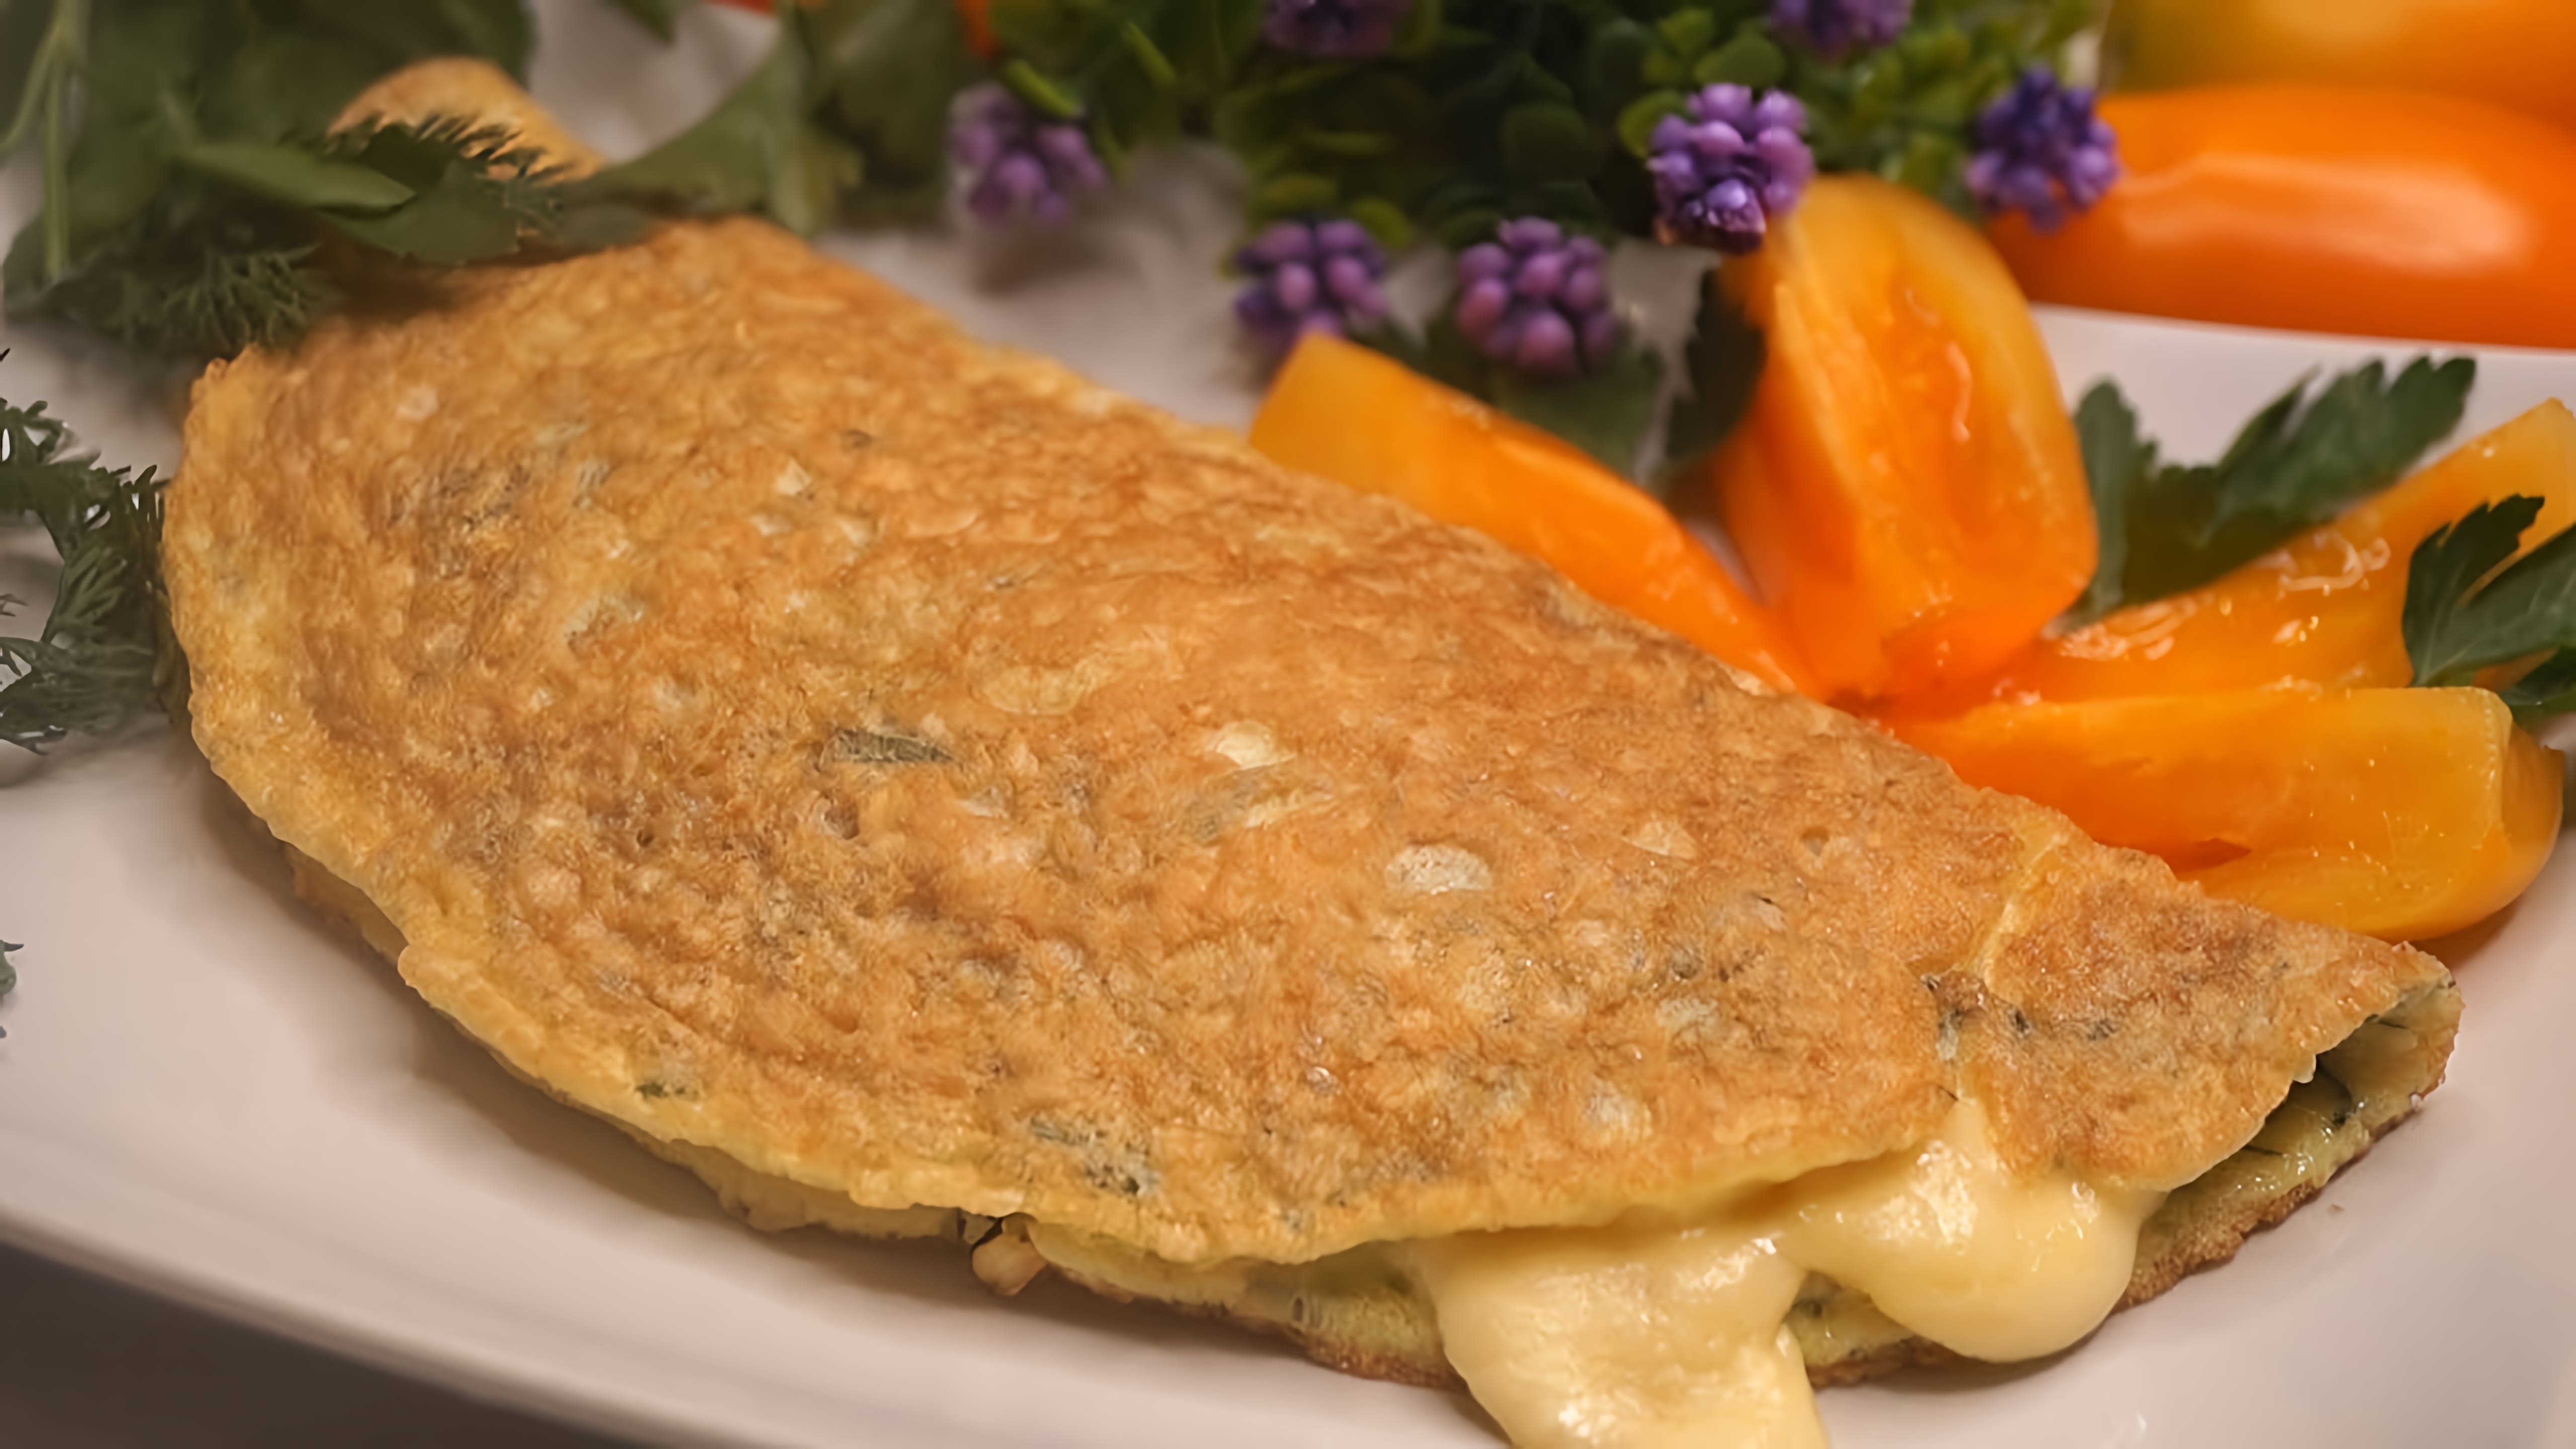 В этом видео демонстрируется рецепт приготовления овсяного блина на завтрак с сыром